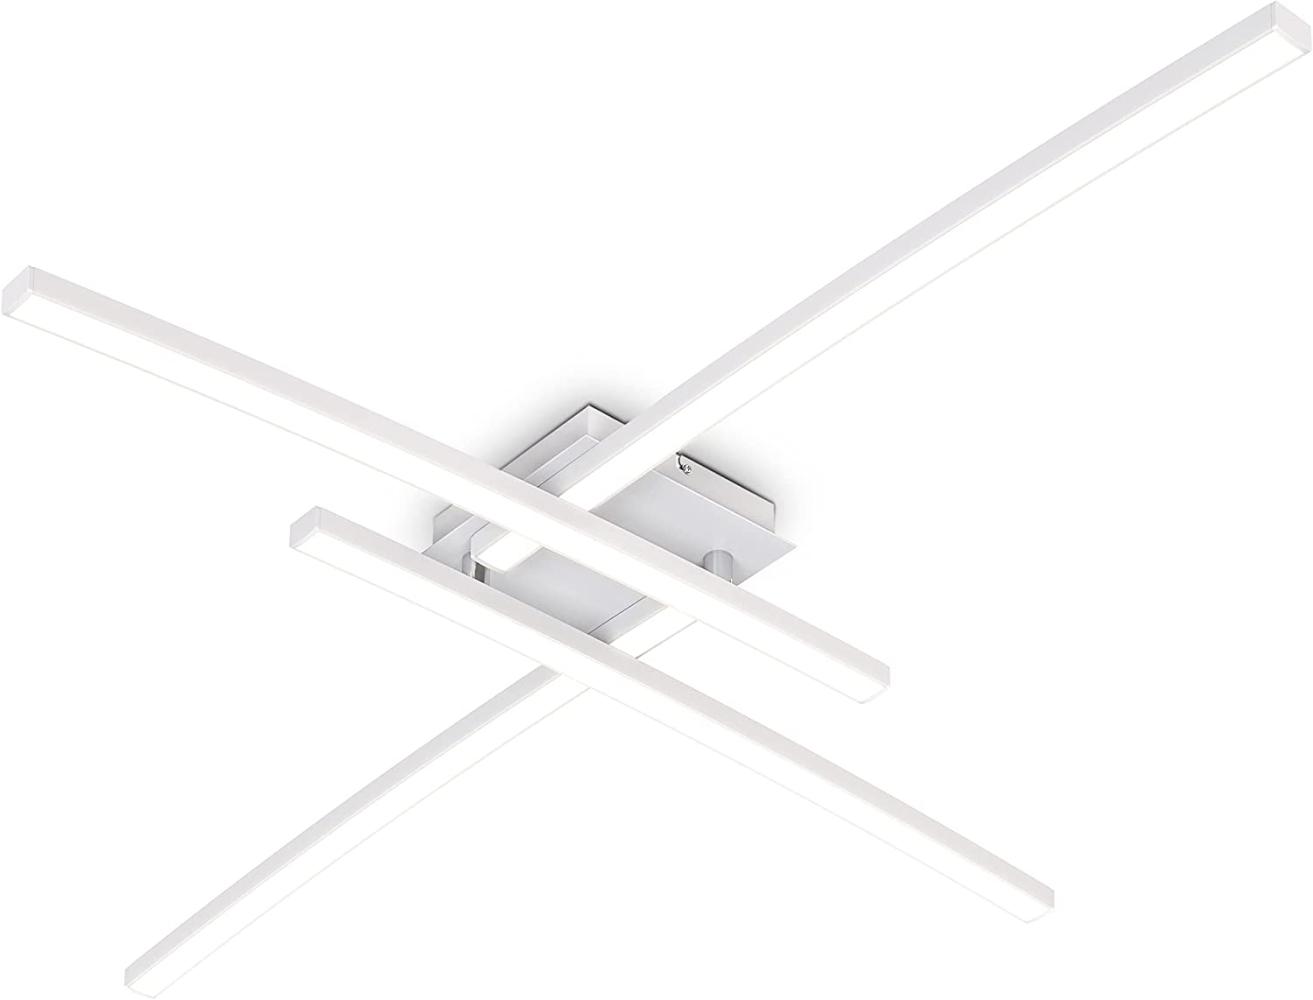 LED Deckenleuchte weiß schwenkbar Deckenlampe 20W warmweiß modern Flur Küche Bild 1